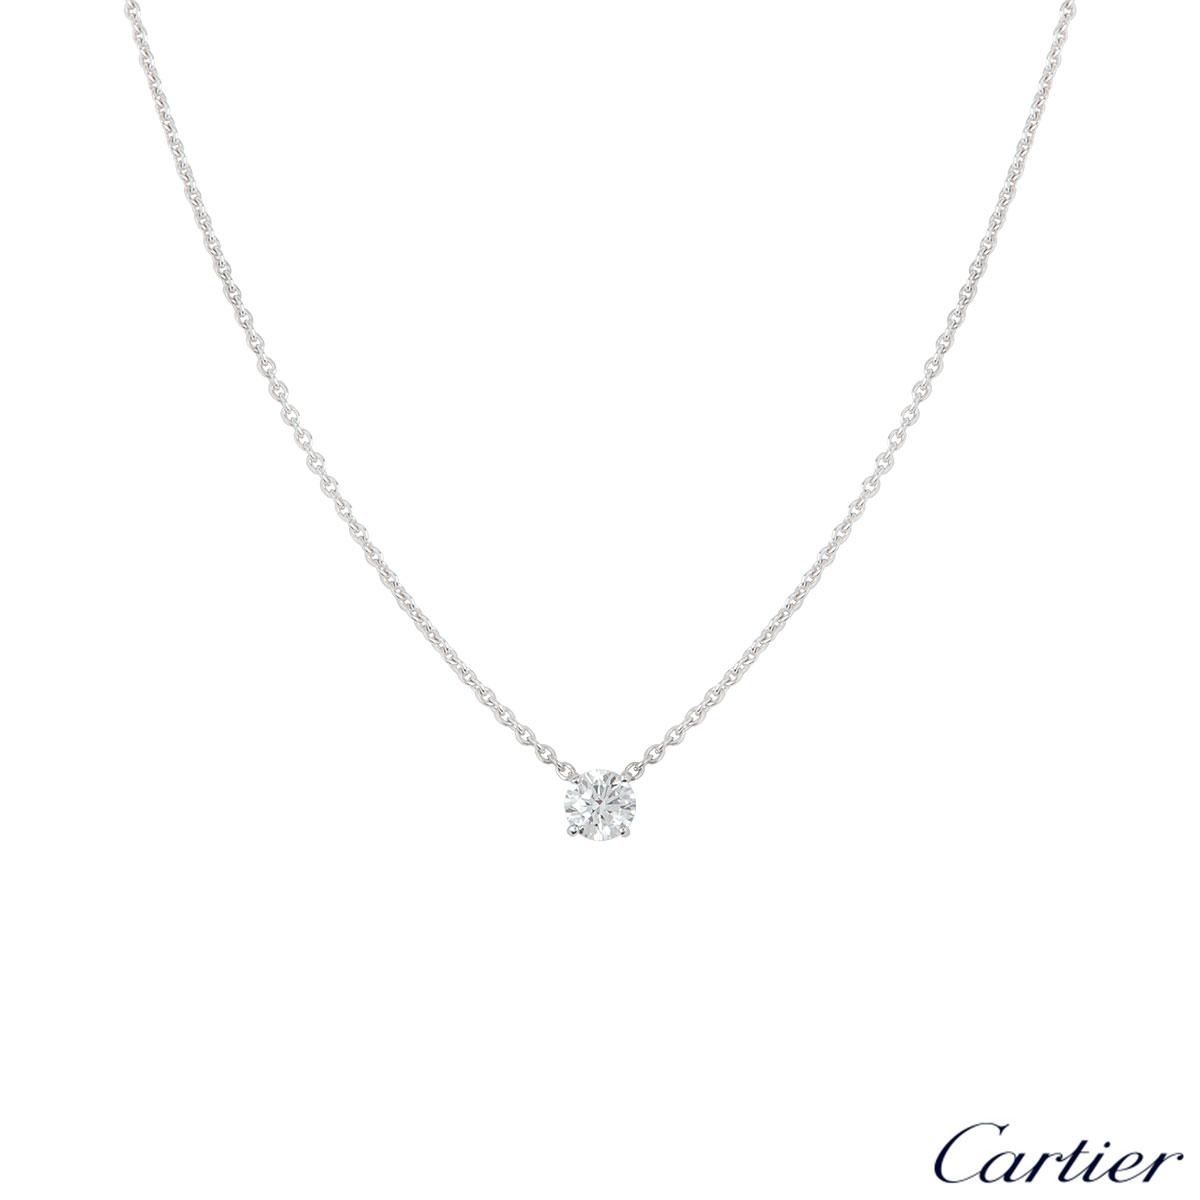 Cartier White Gold Diamond Necklace 0.80ct E/VS2 | Rich Diamonds